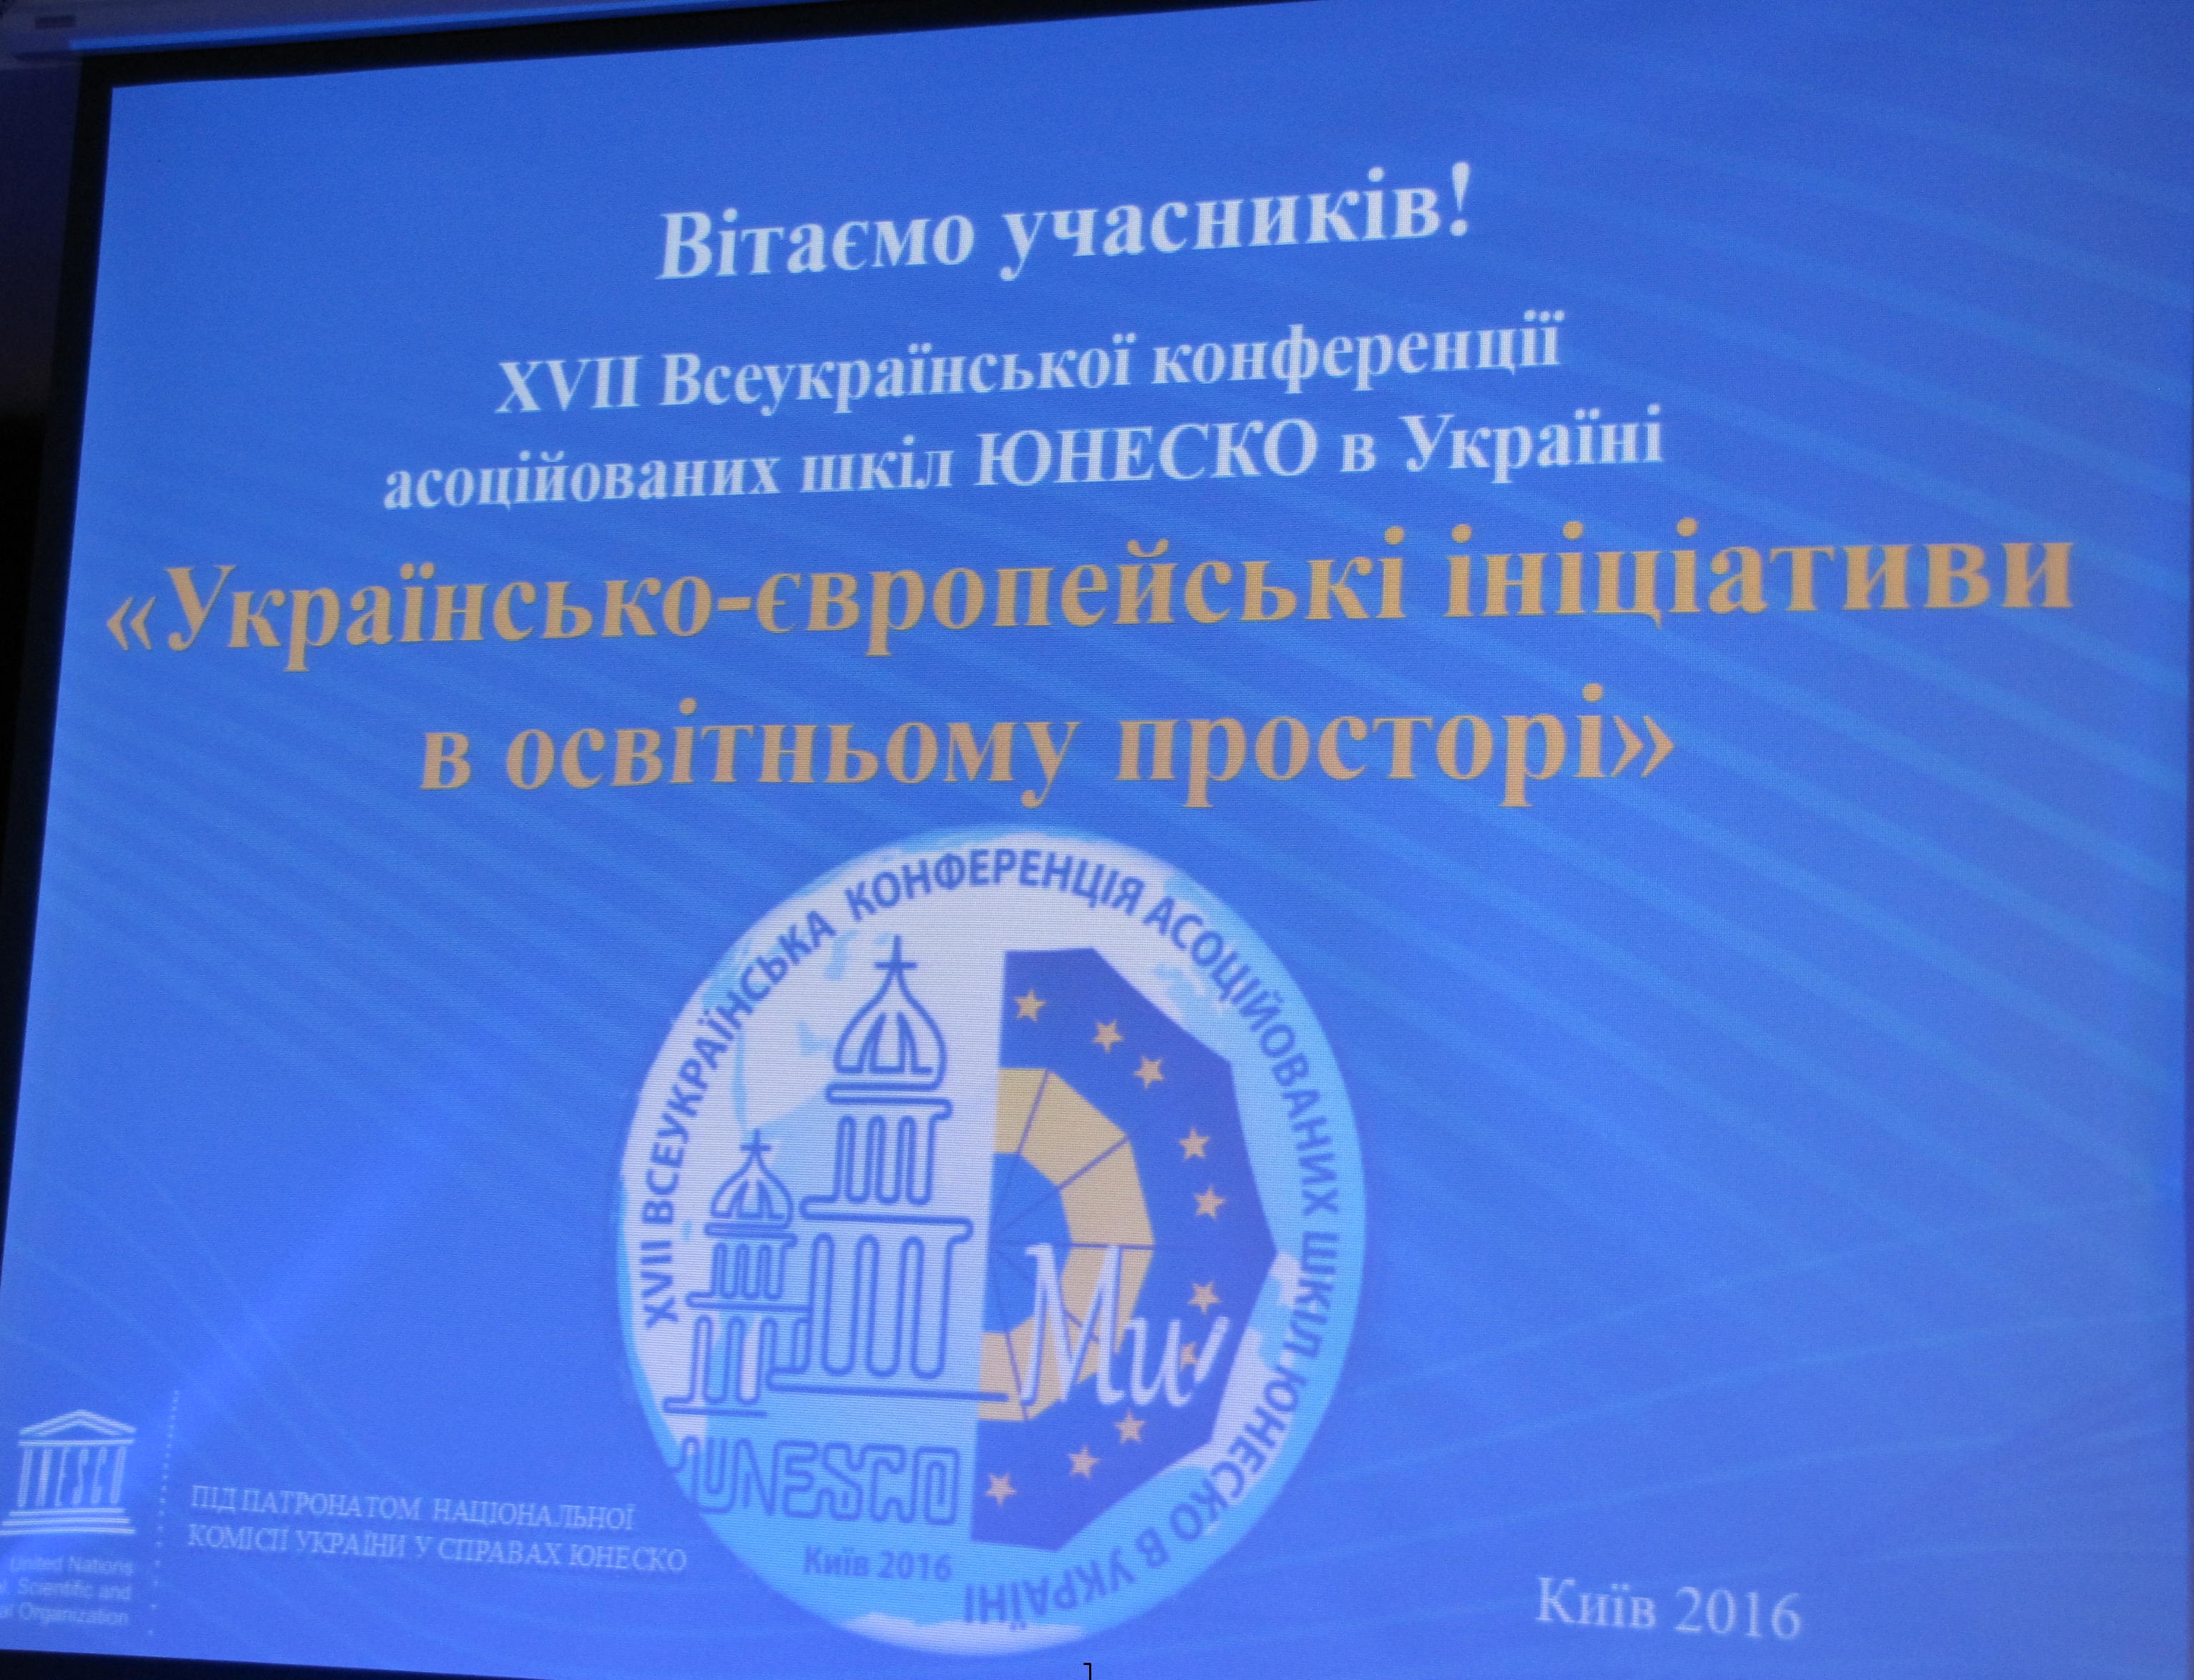 XVIІ Всеукраїнська конференція учнів асоційованих шкіл ЮНЕСКО